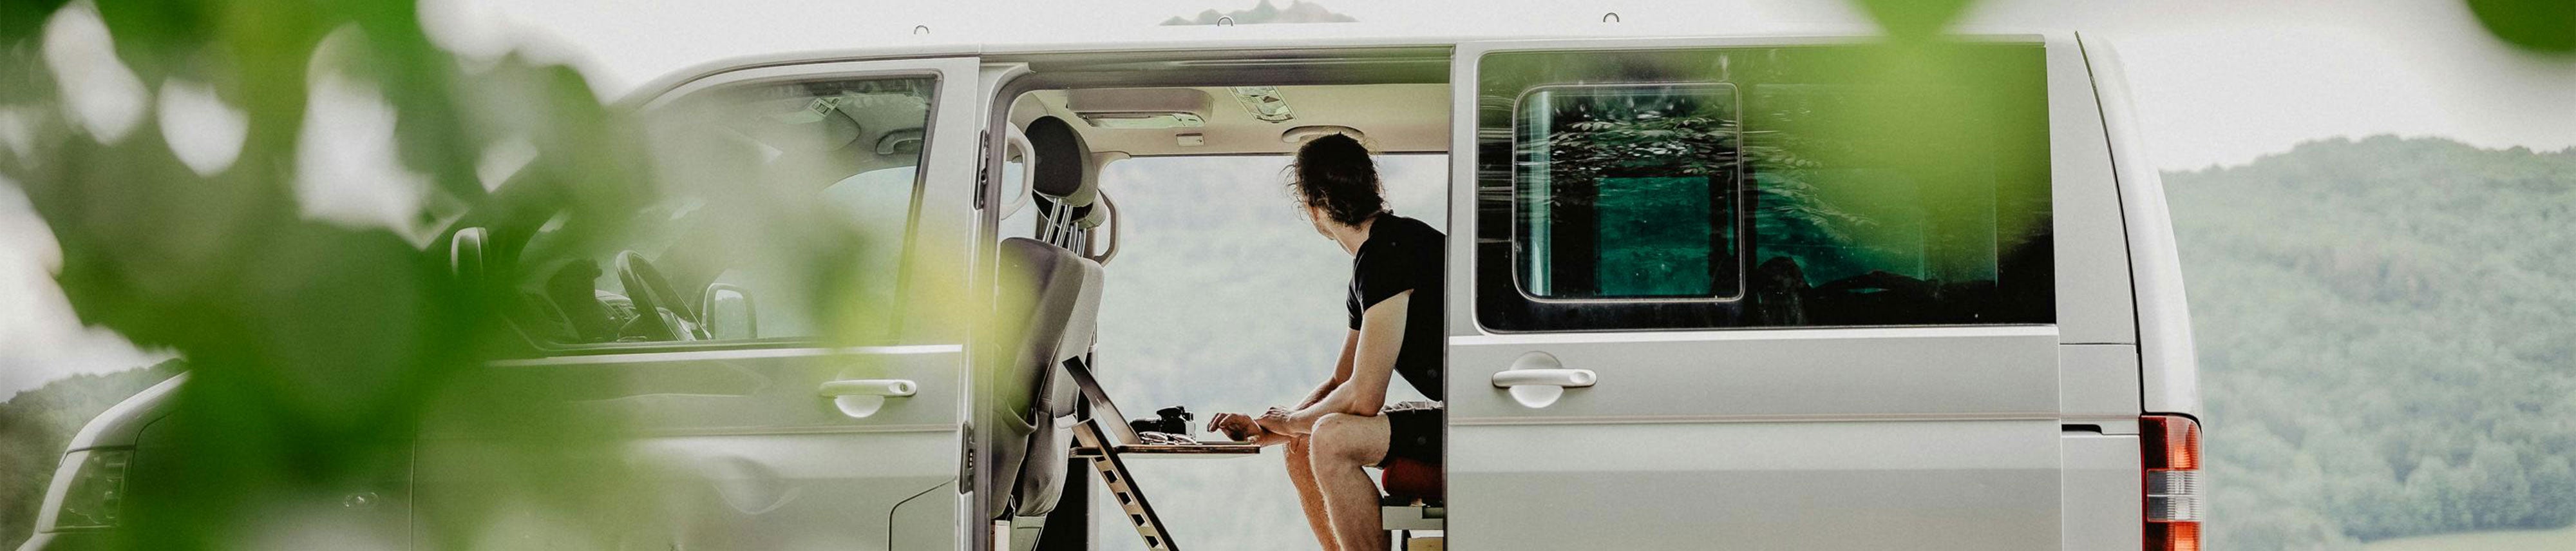 Person sitzt im hinteren Teil eines Vans an einem Standsome und blickt durch die offene Türe auf eine bergige Landschaft.